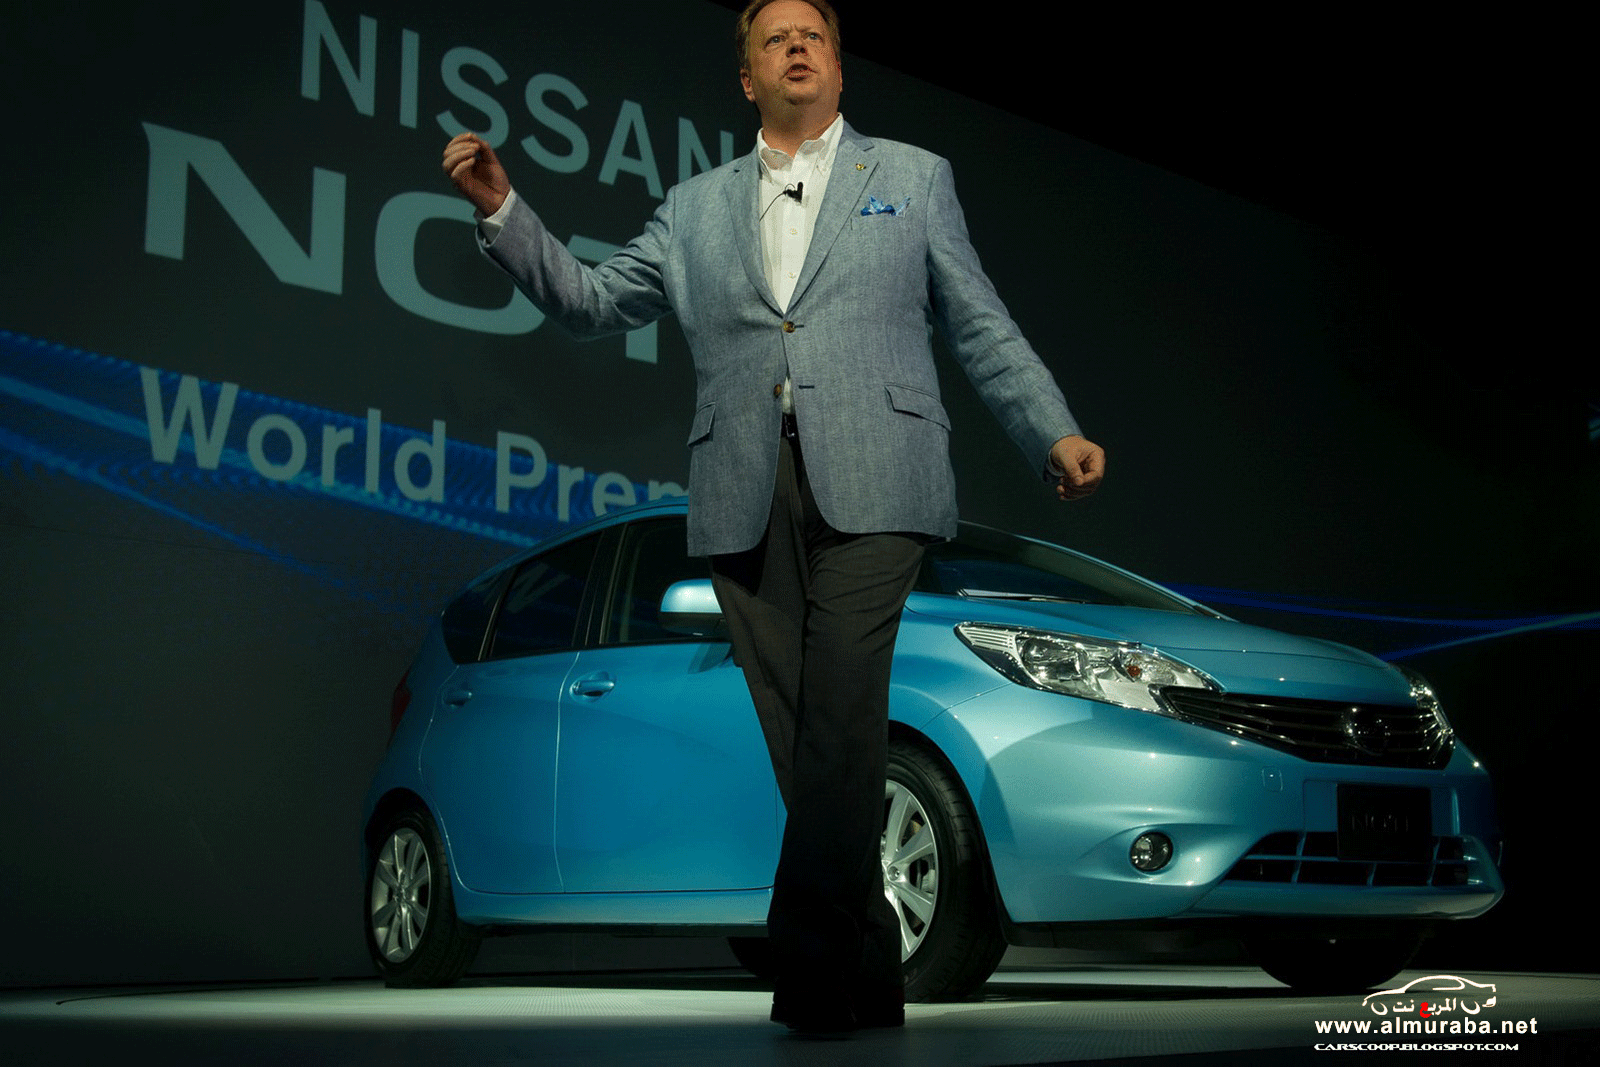 نيسان نوت 2013 الجديدة السيارة الاقتصادية صور واسعار ومواصفات Nissan Note 2013 2